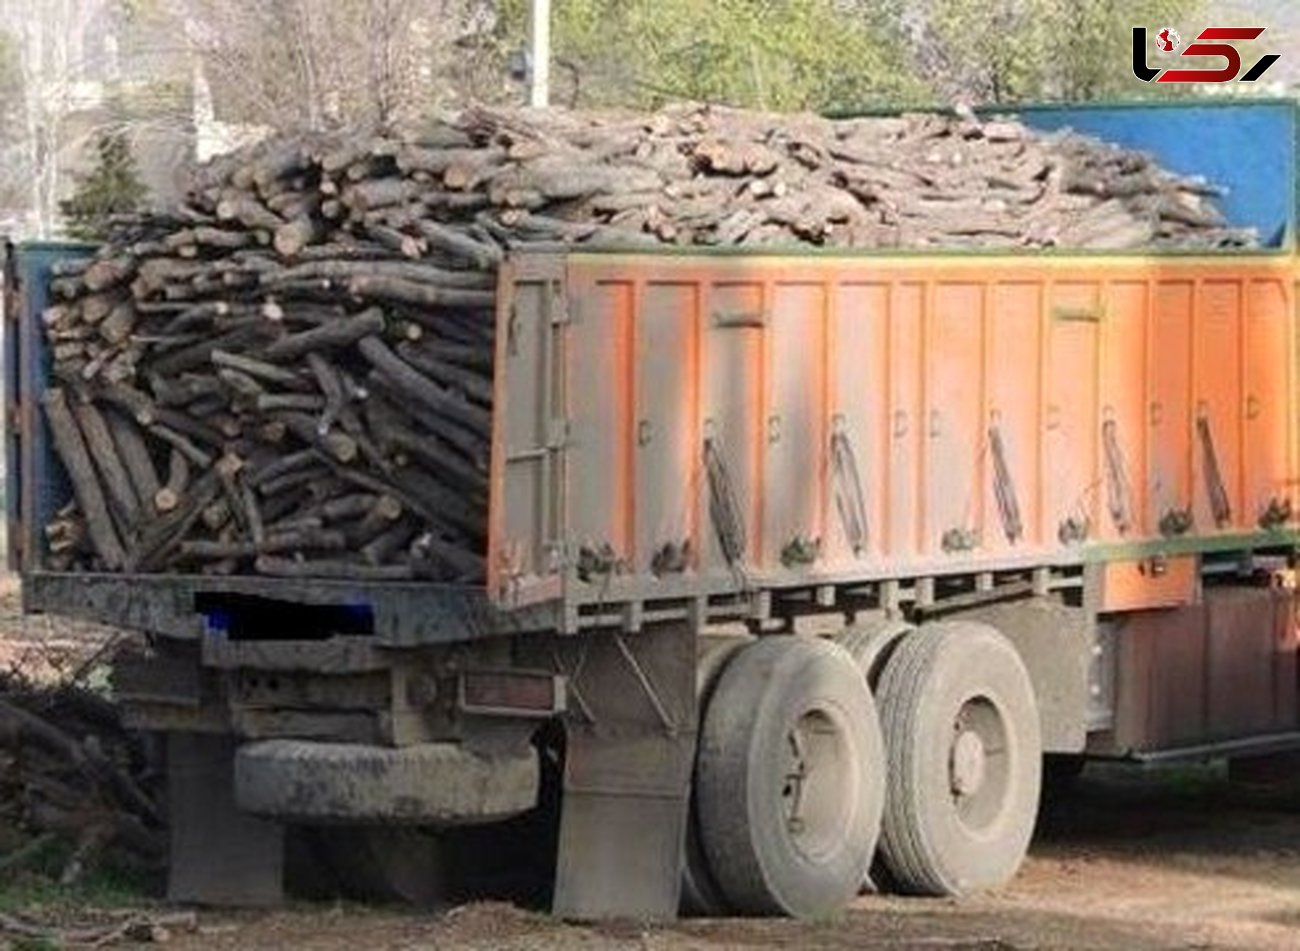 اشد مجازات درانتظار قاچاقچیان قطع و حمل چوب آلات جنگلی در گلستان